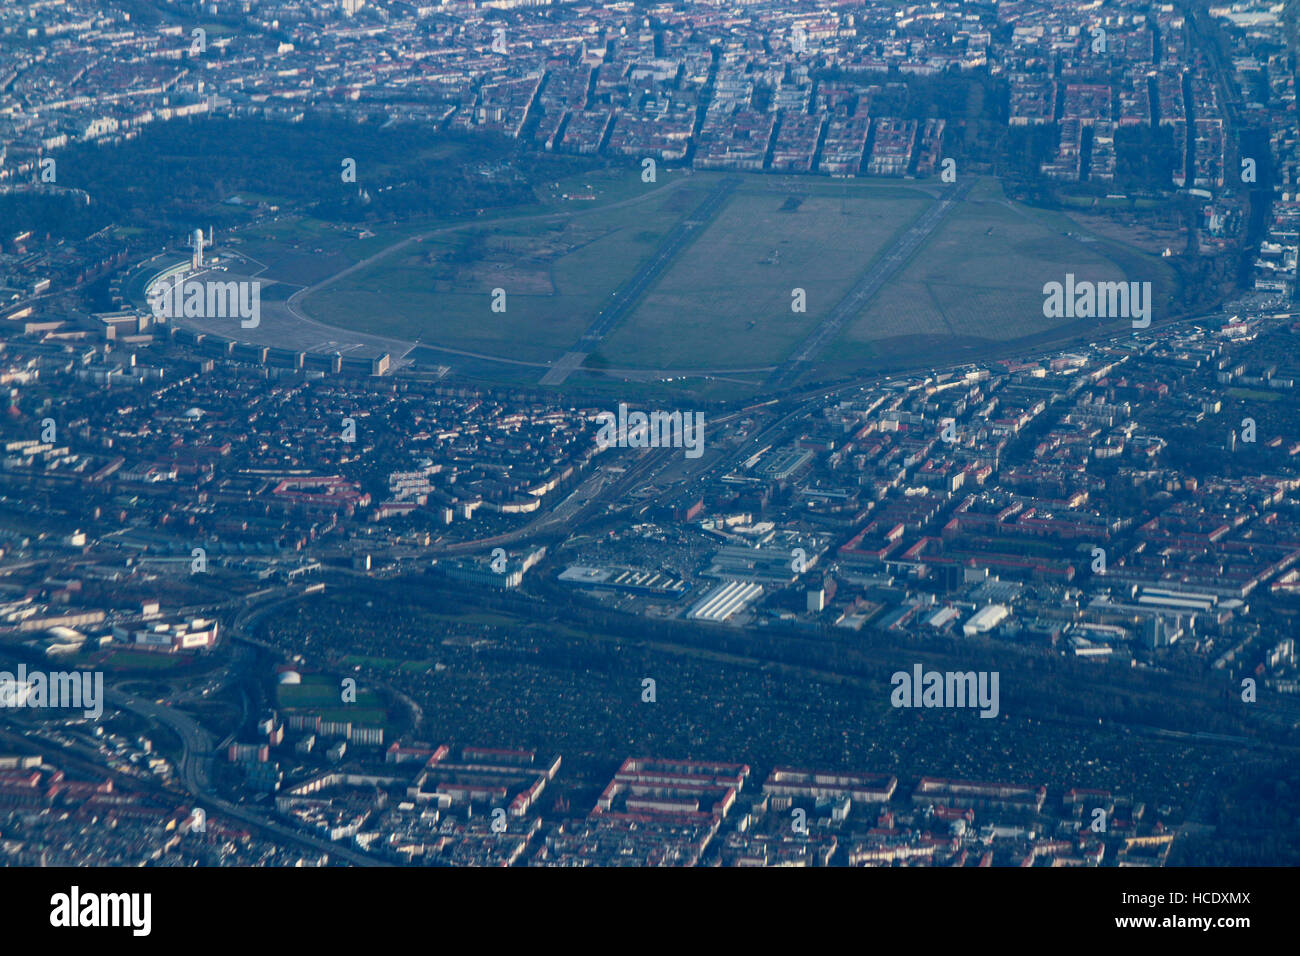 Luftbild: Flughafen Tempelhof, Berlin vom Flugzeug aus gesehen. Stock Photo